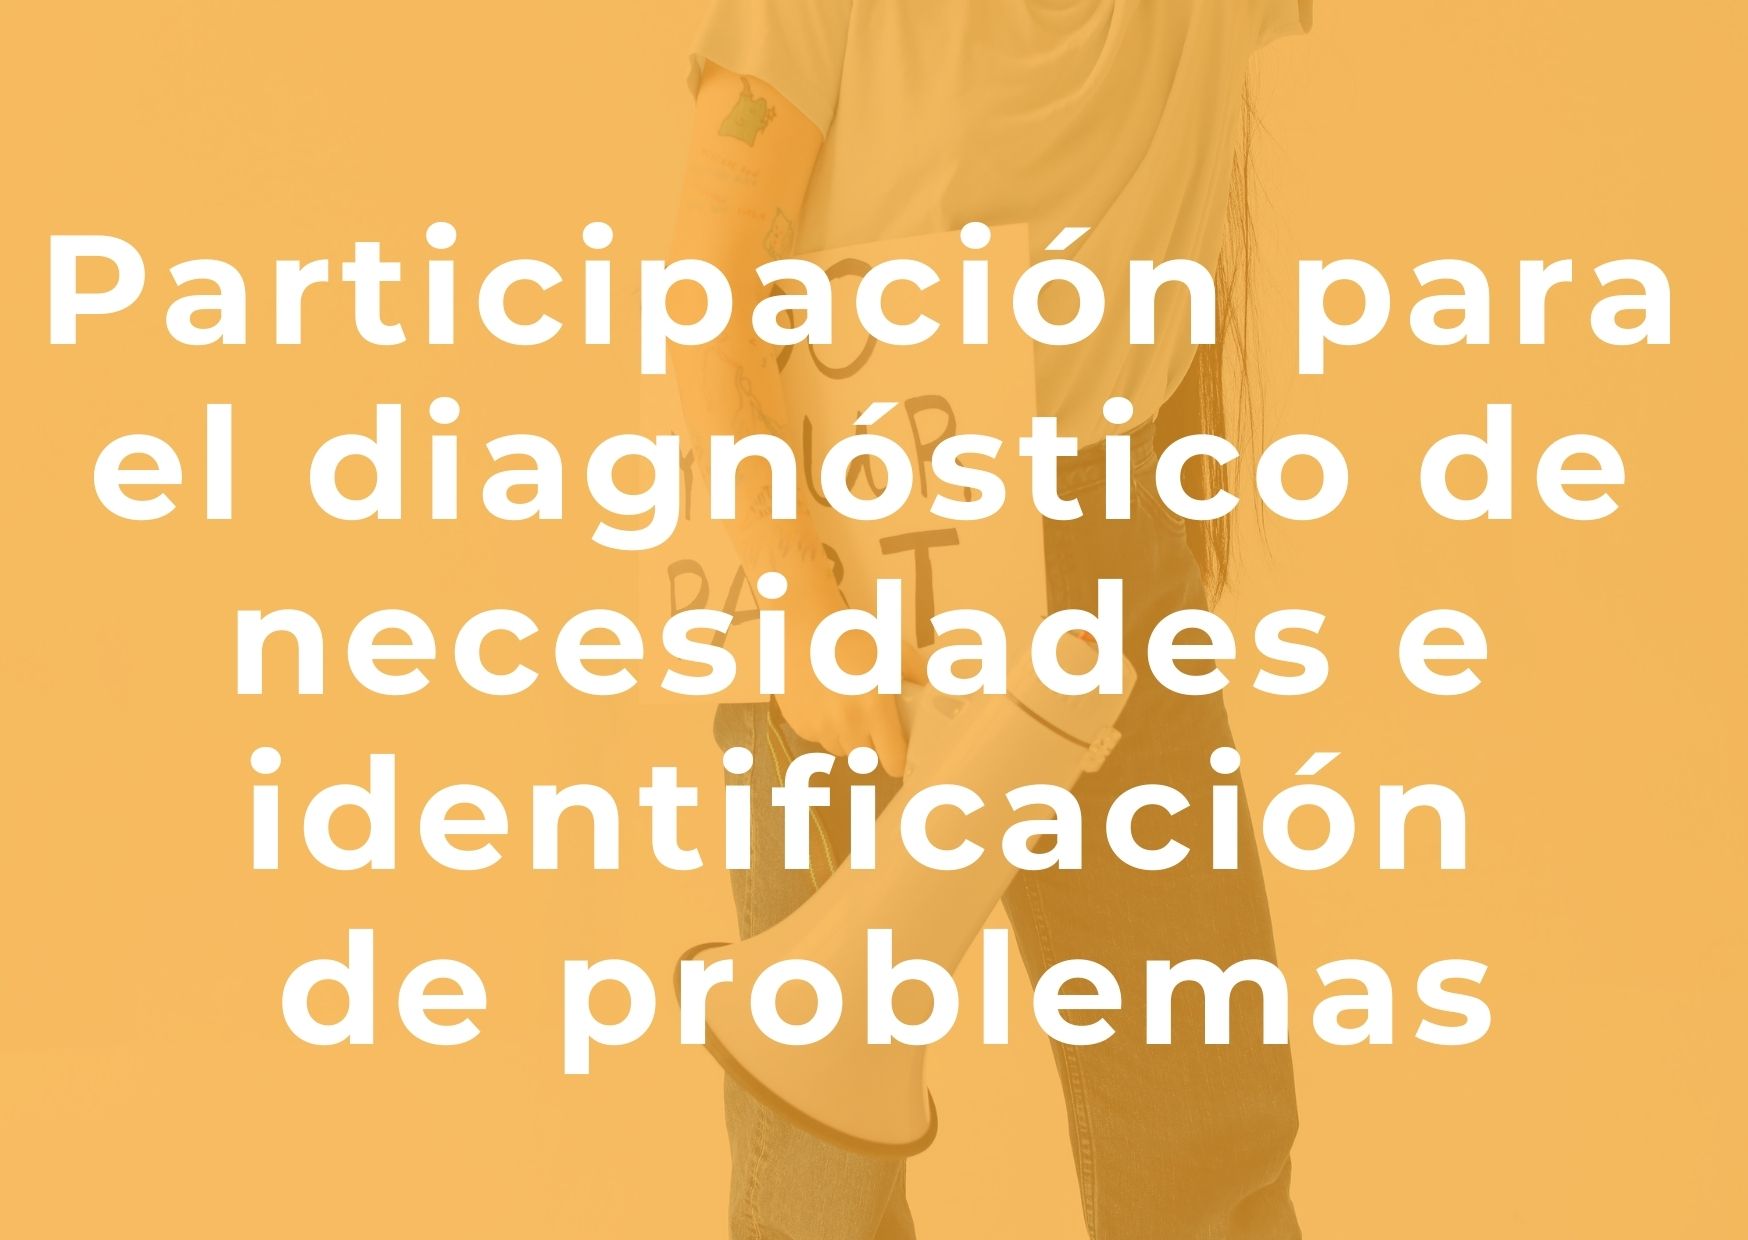 Participación para el diagnostico e identificación de problemas